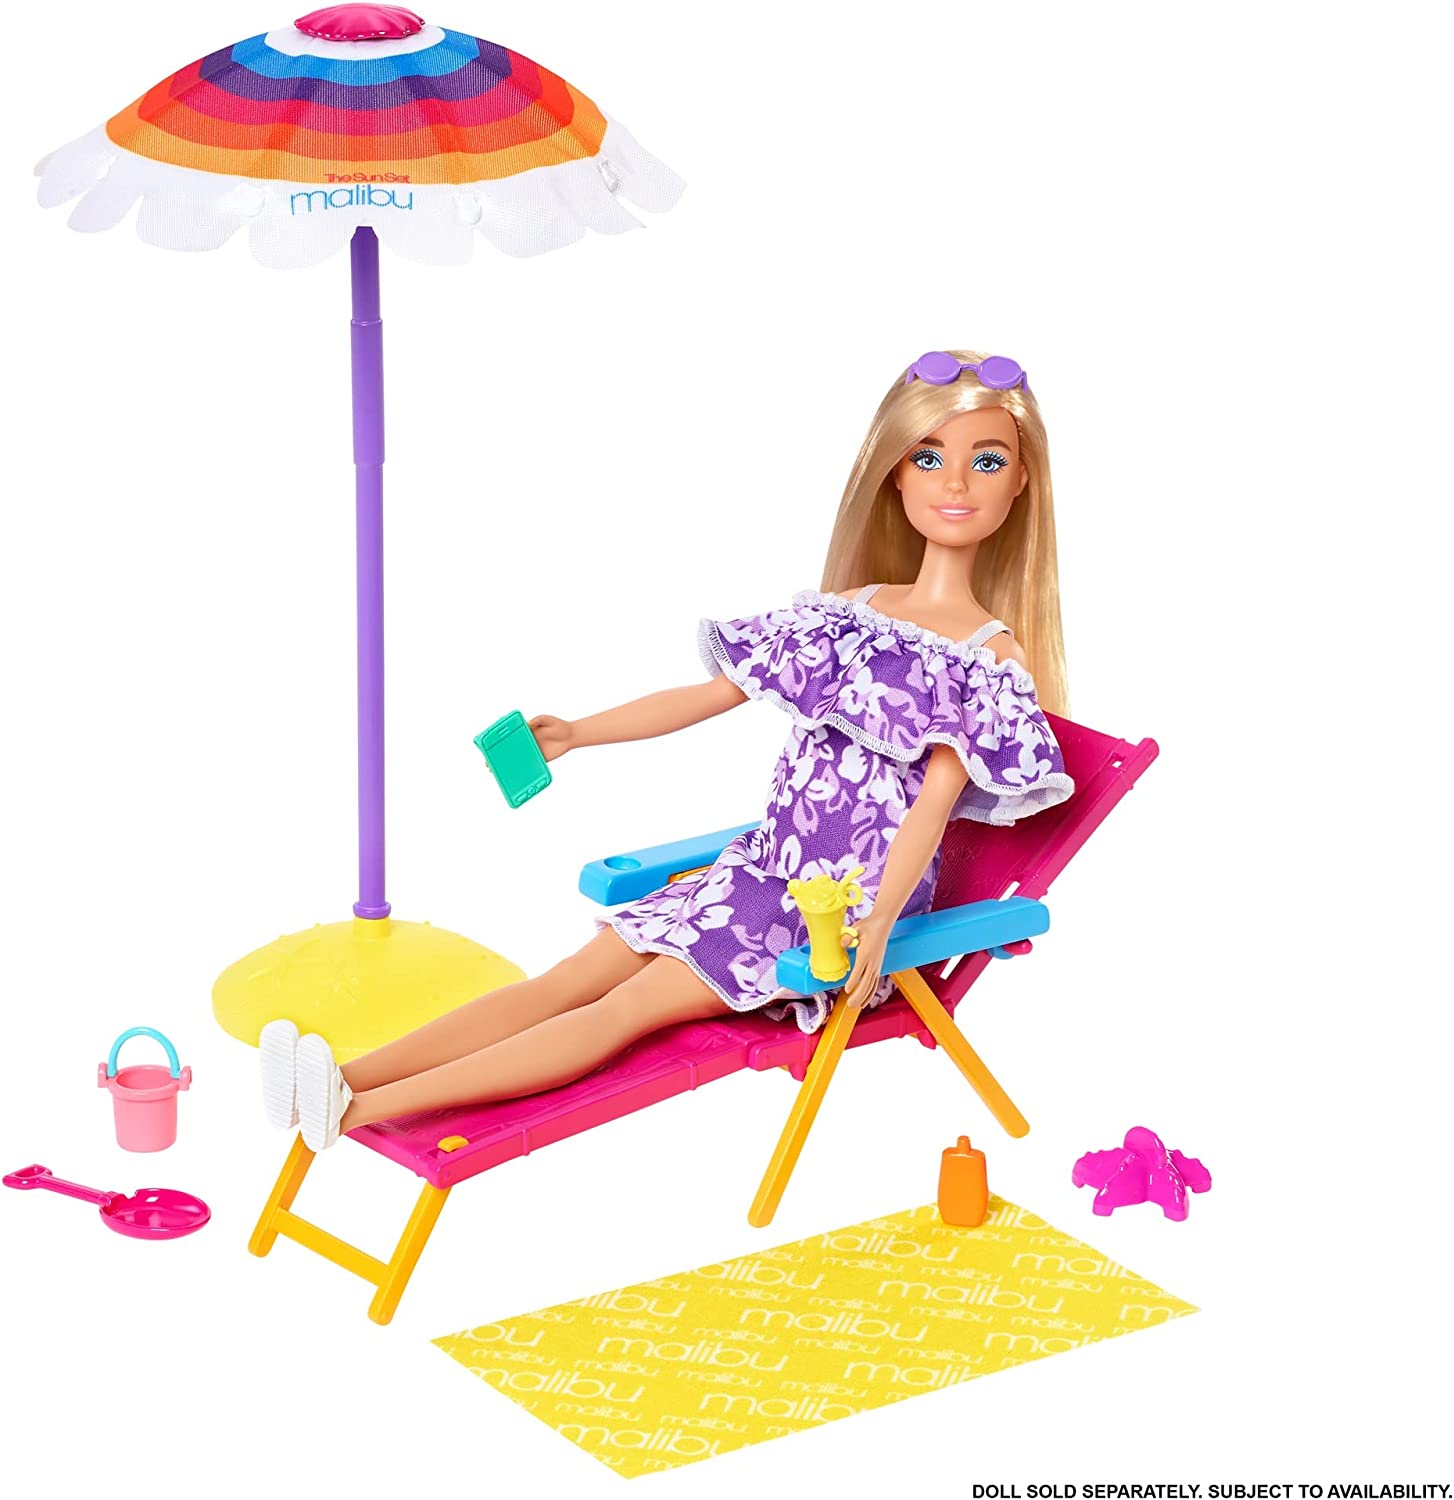 Barbie Loves the Ocean Strandspaß Spielset mit Liegestuhl, Sonnenschirm GYG17  Mattel   